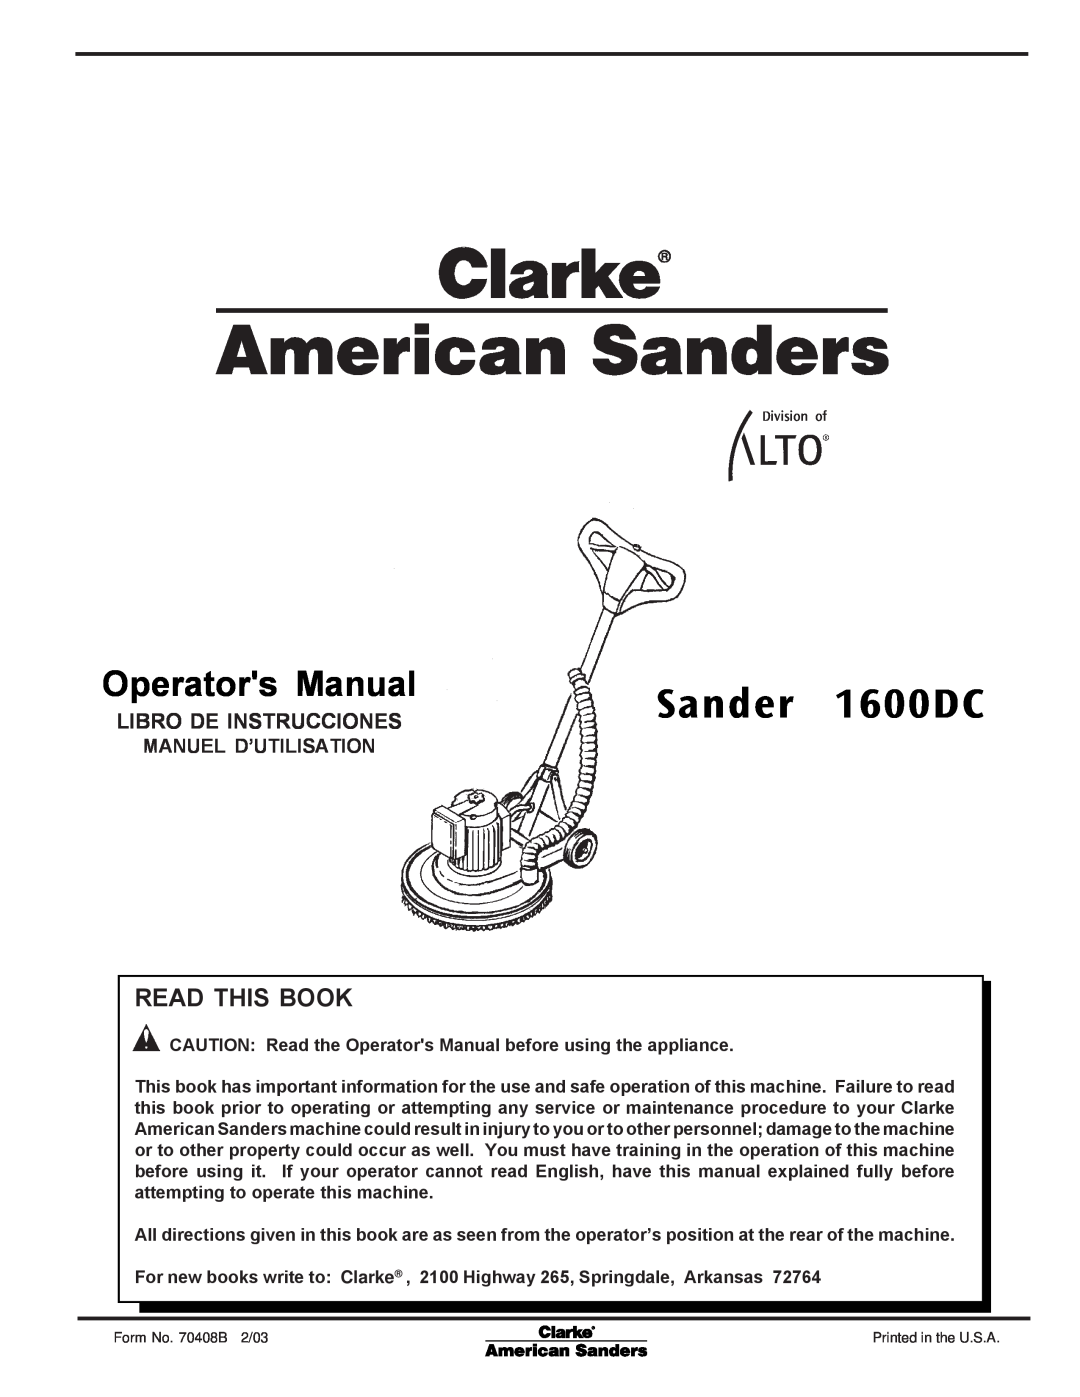 Nilfisk-ALTO C.A.V. 15 manual Sander 1600DC, Libro De Instrucciones, Operators Manual, Read This Book, Manuel D’Utilisation 